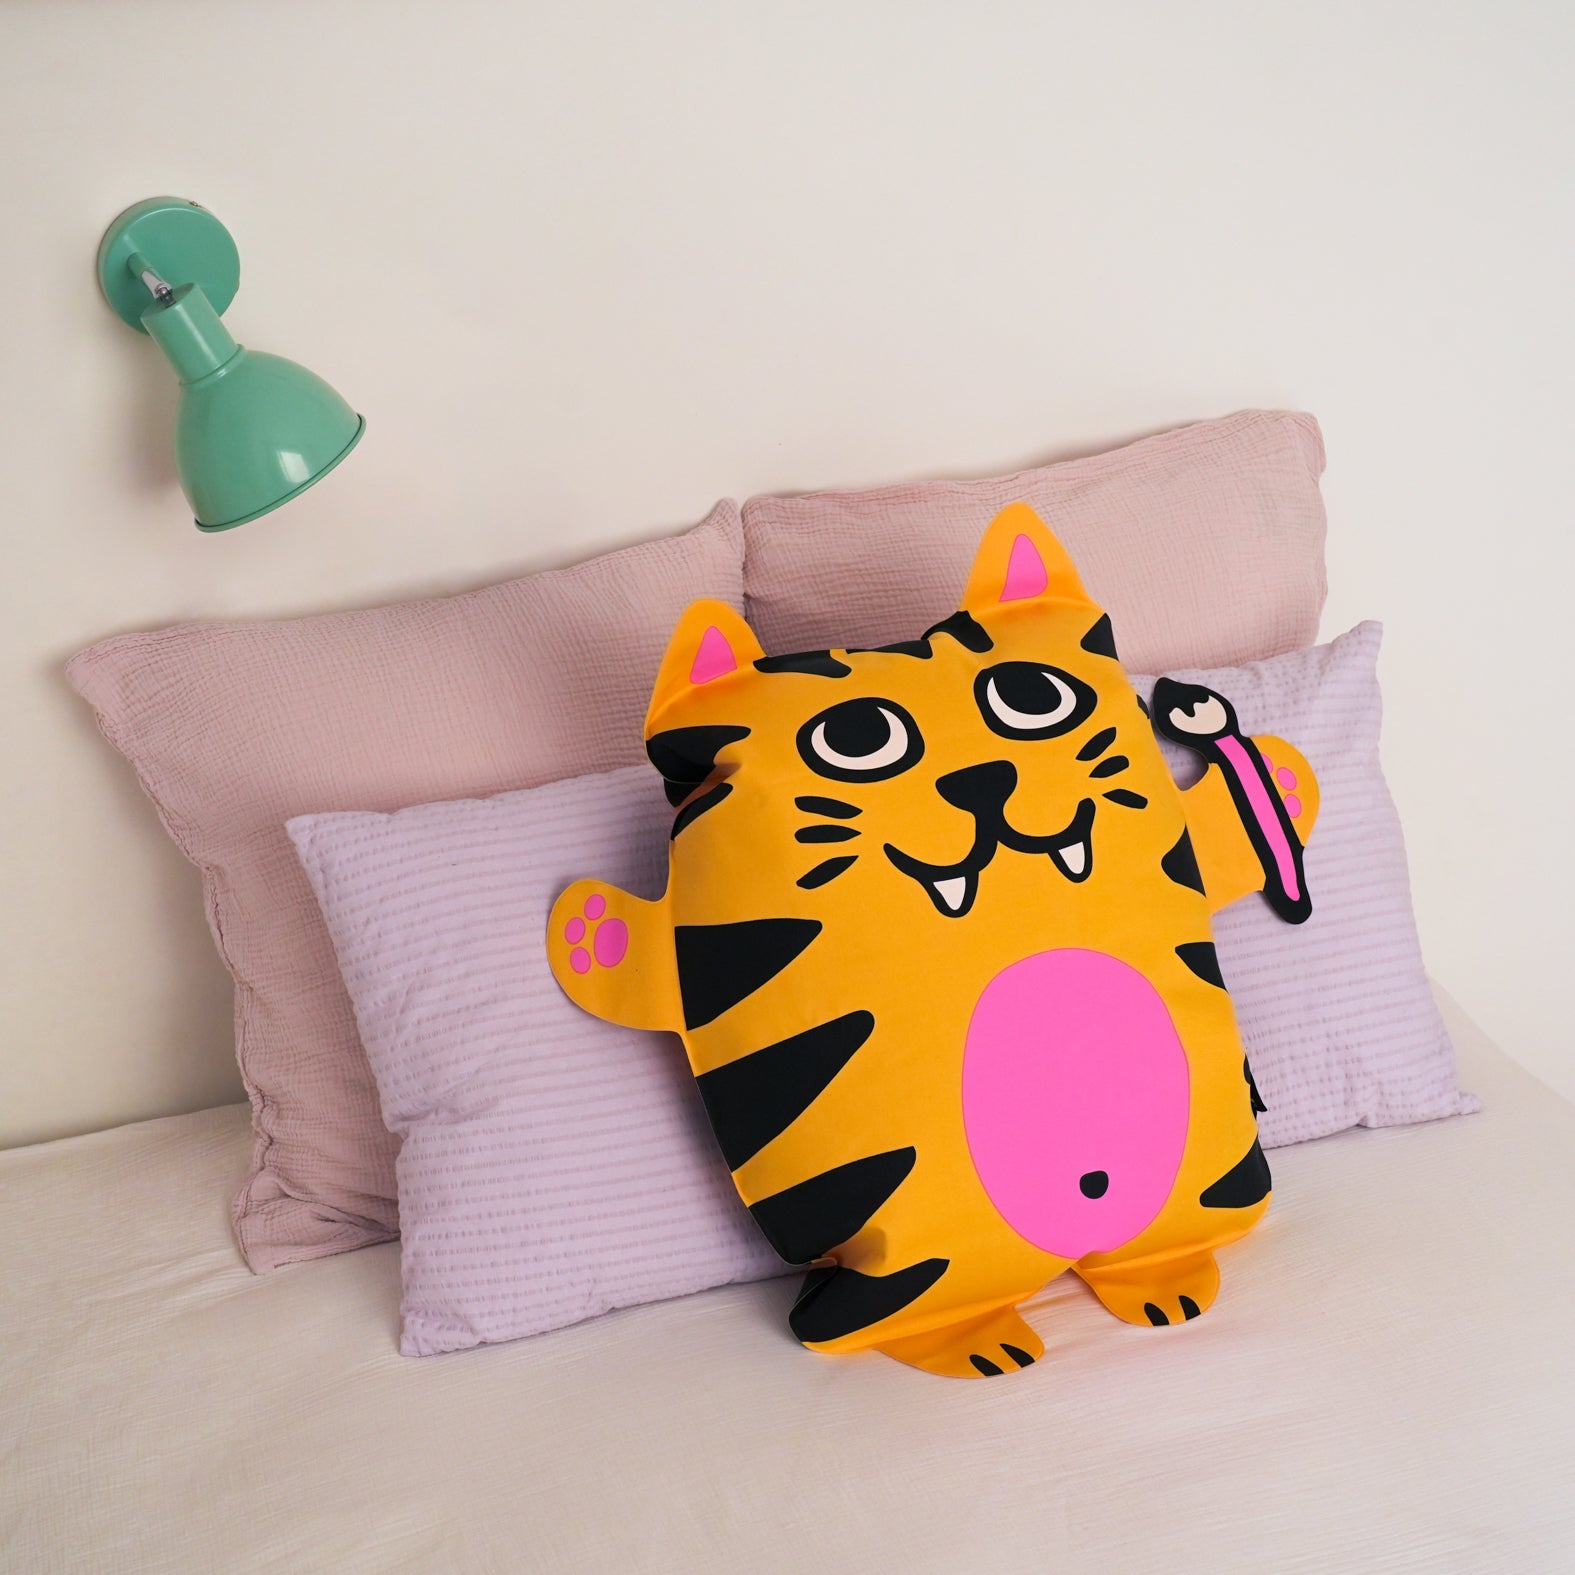 Tiga  - Super inflatable pillow